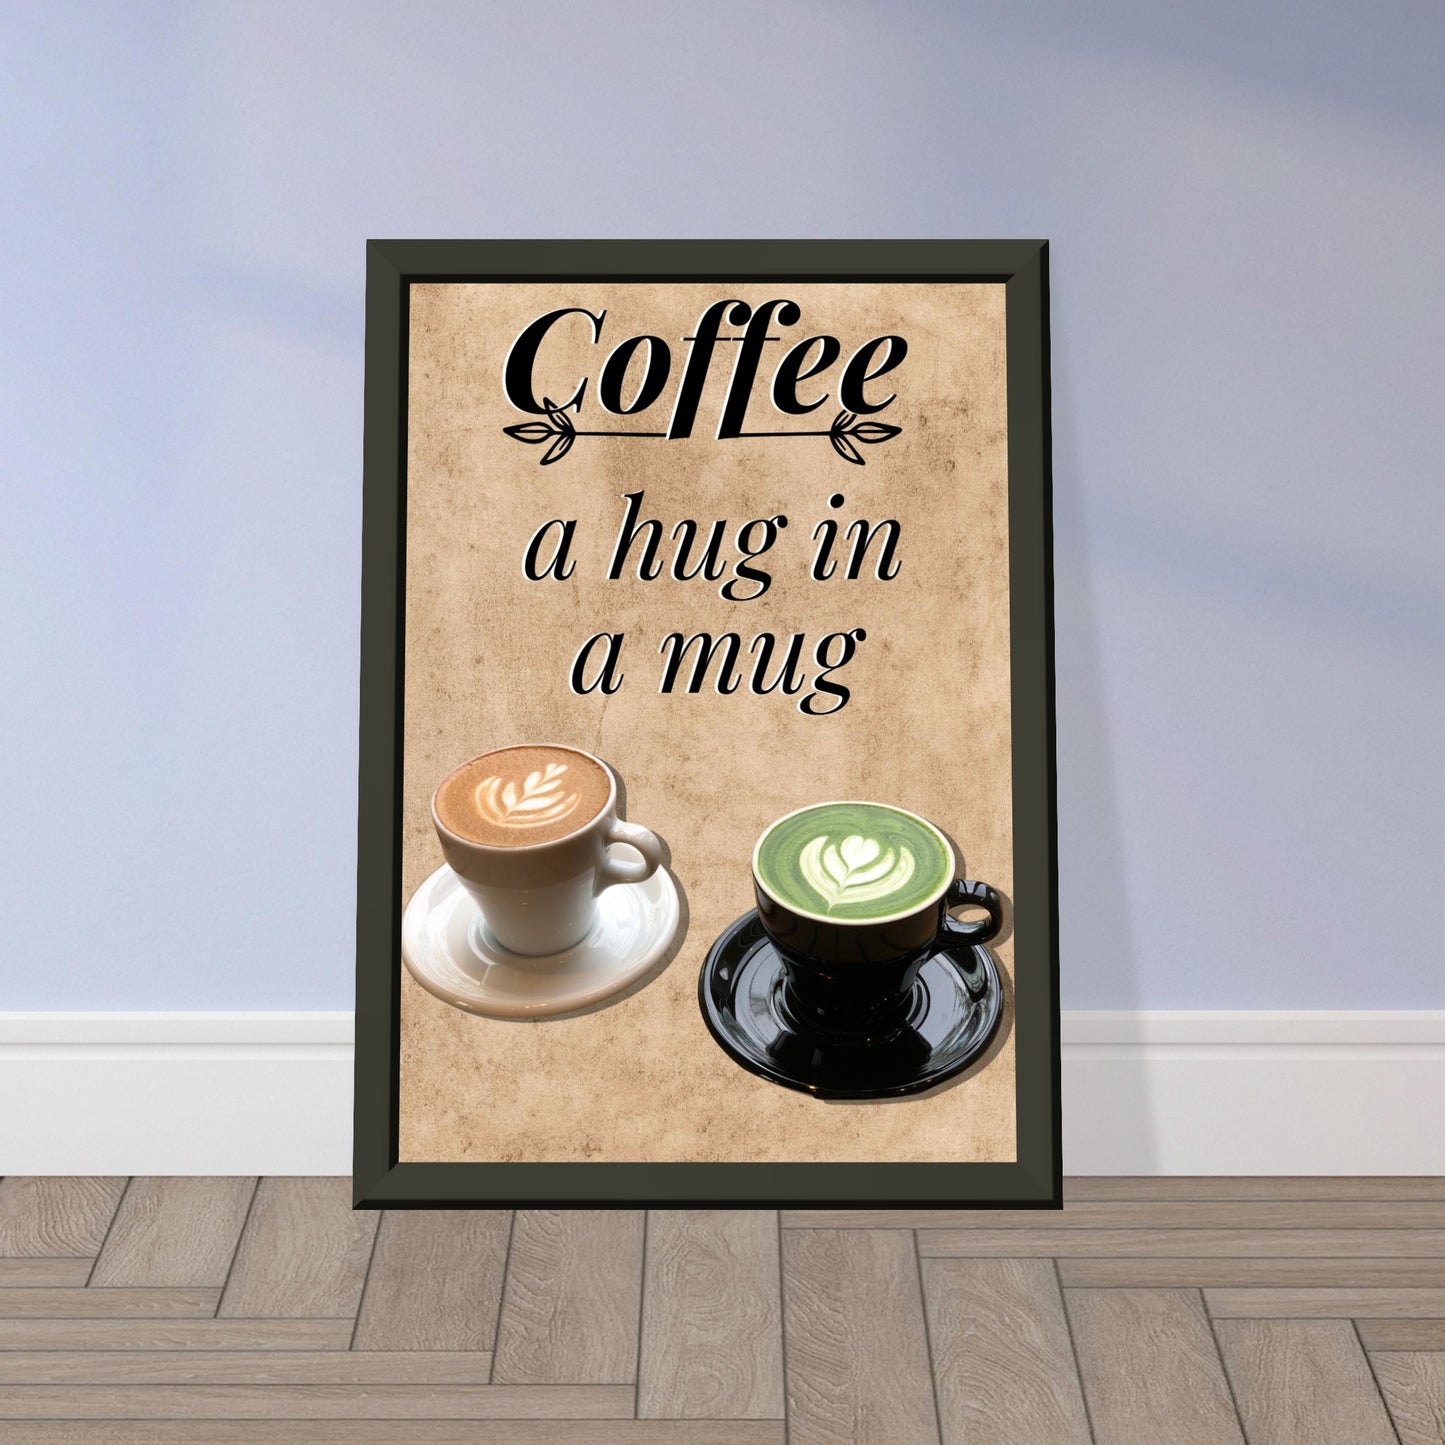 Eingerahmtes Bild mit der Überschrift: "Coffee" und dem Titel: "a hug in a mug" mit zwei Tassen Kaffee auf einem Beigen Hintergrund an einer Lila wand lehnend